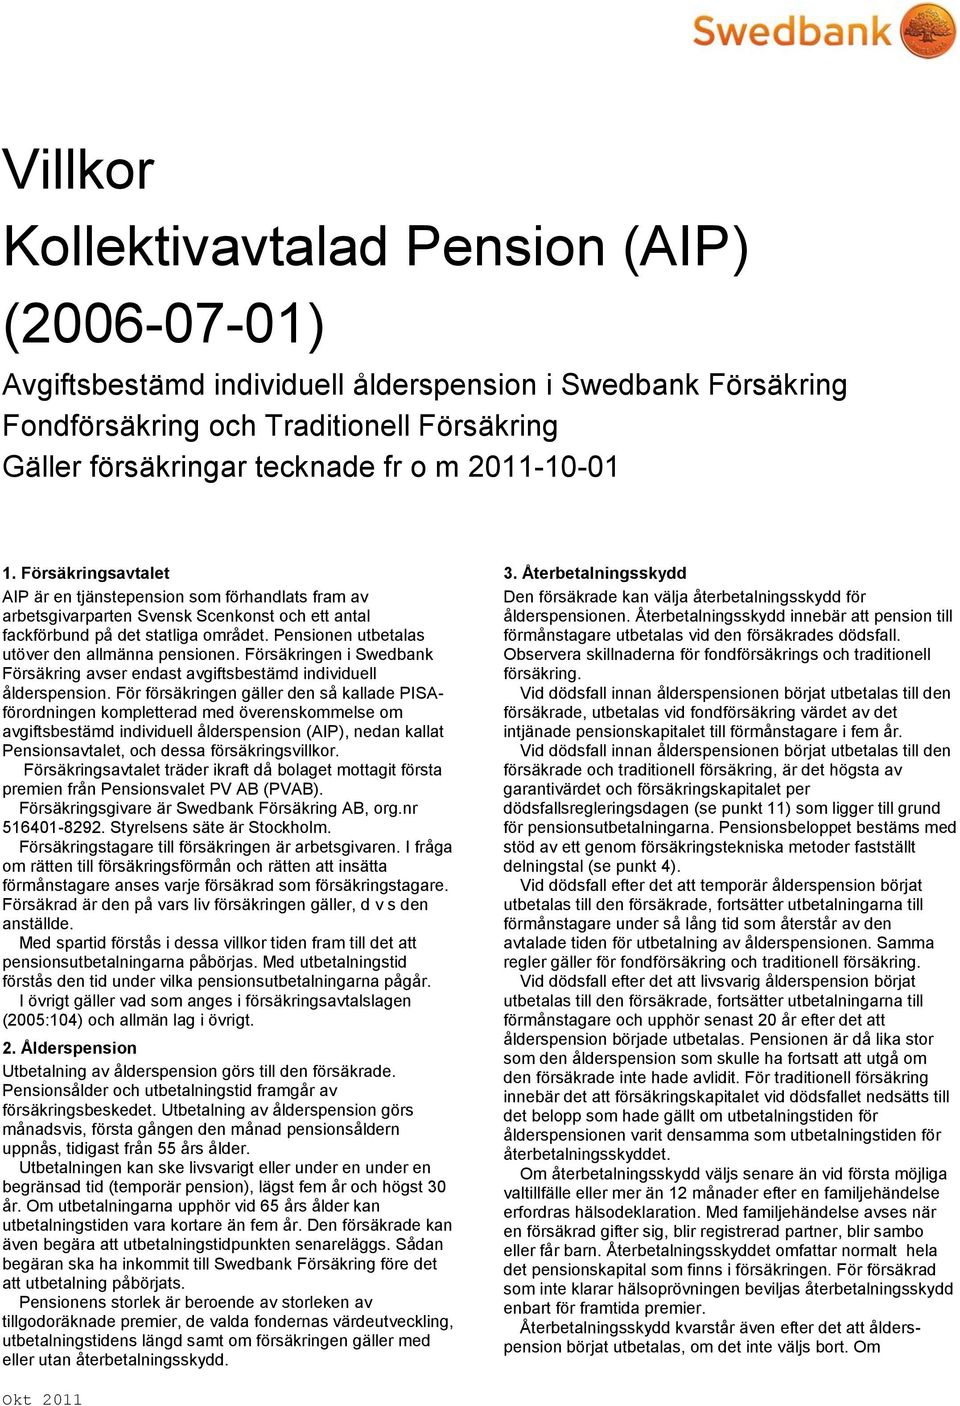 Pensionen utbetalas utöver den allmänna pensionen. Försäkringen i Swedbank Försäkring avser endast avgiftsbestämd individuell ålderspension.